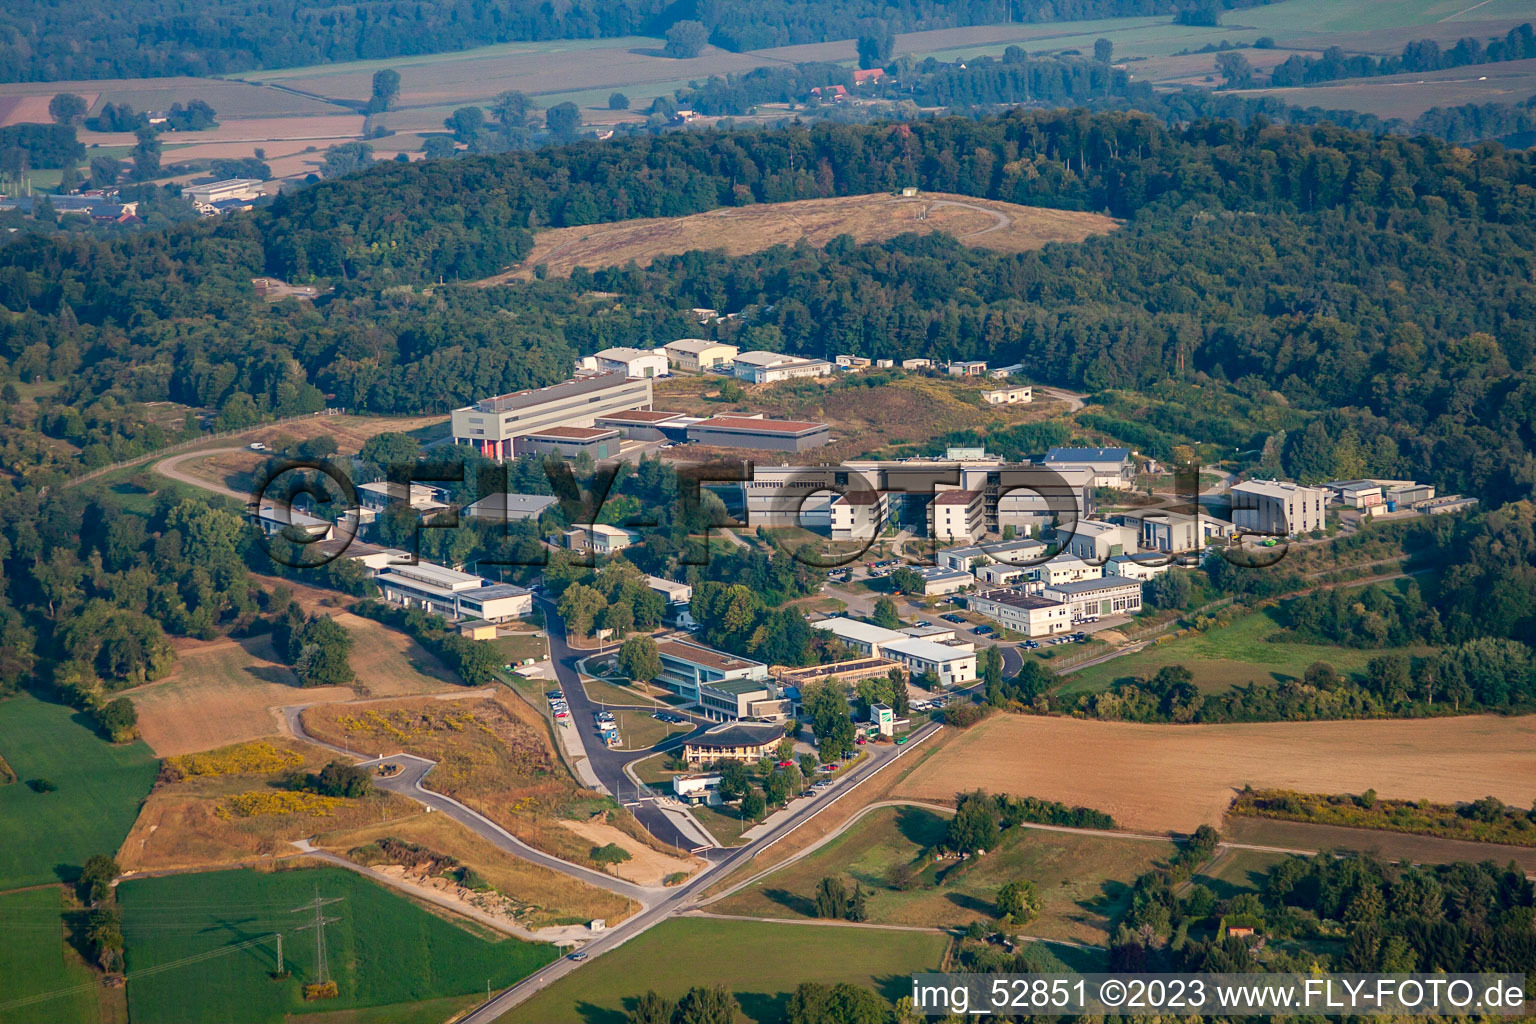 Luftbild von Fraunhofer Institut im Ortsteil Grötzingen in Karlsruhe im Bundesland Baden-Württemberg, Deutschland